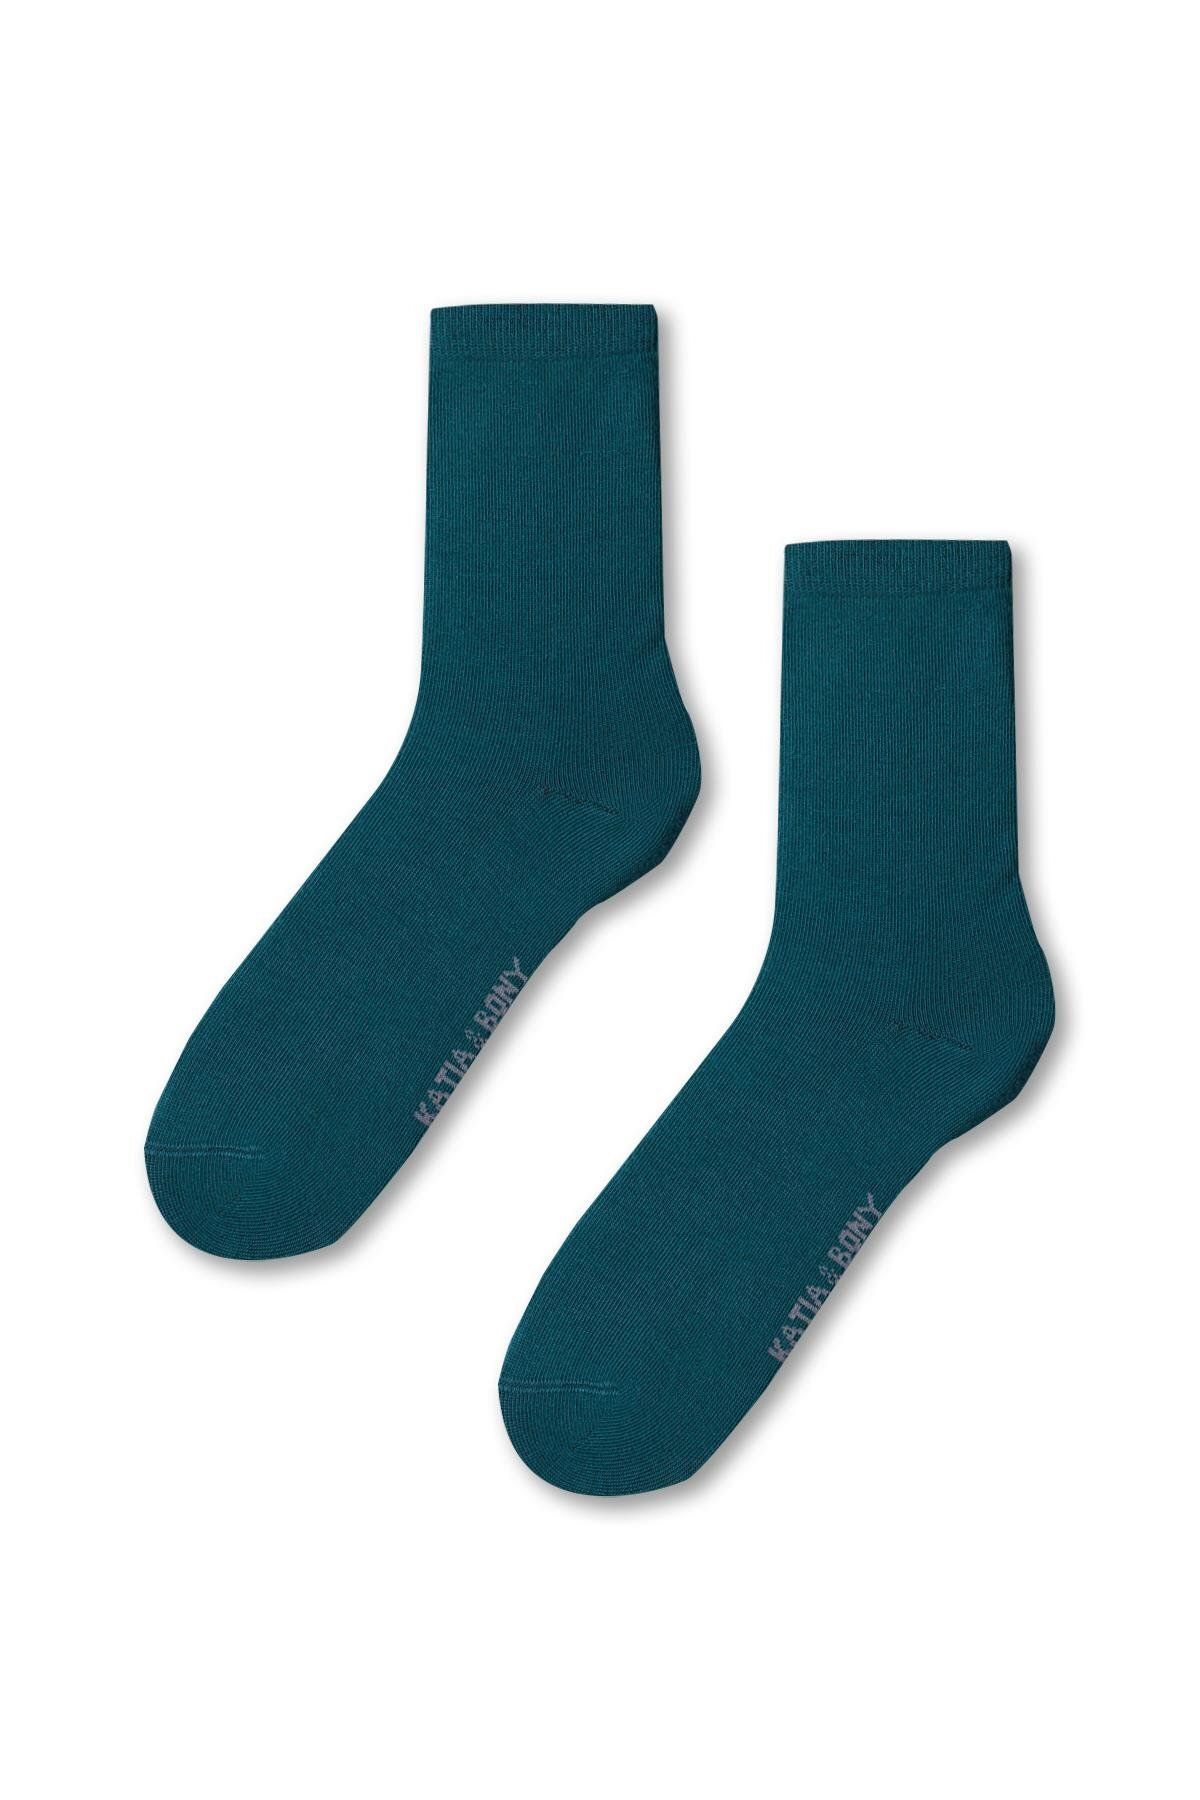 Katia & Bony Kadın Family Basic Soket Çorap Yeşil